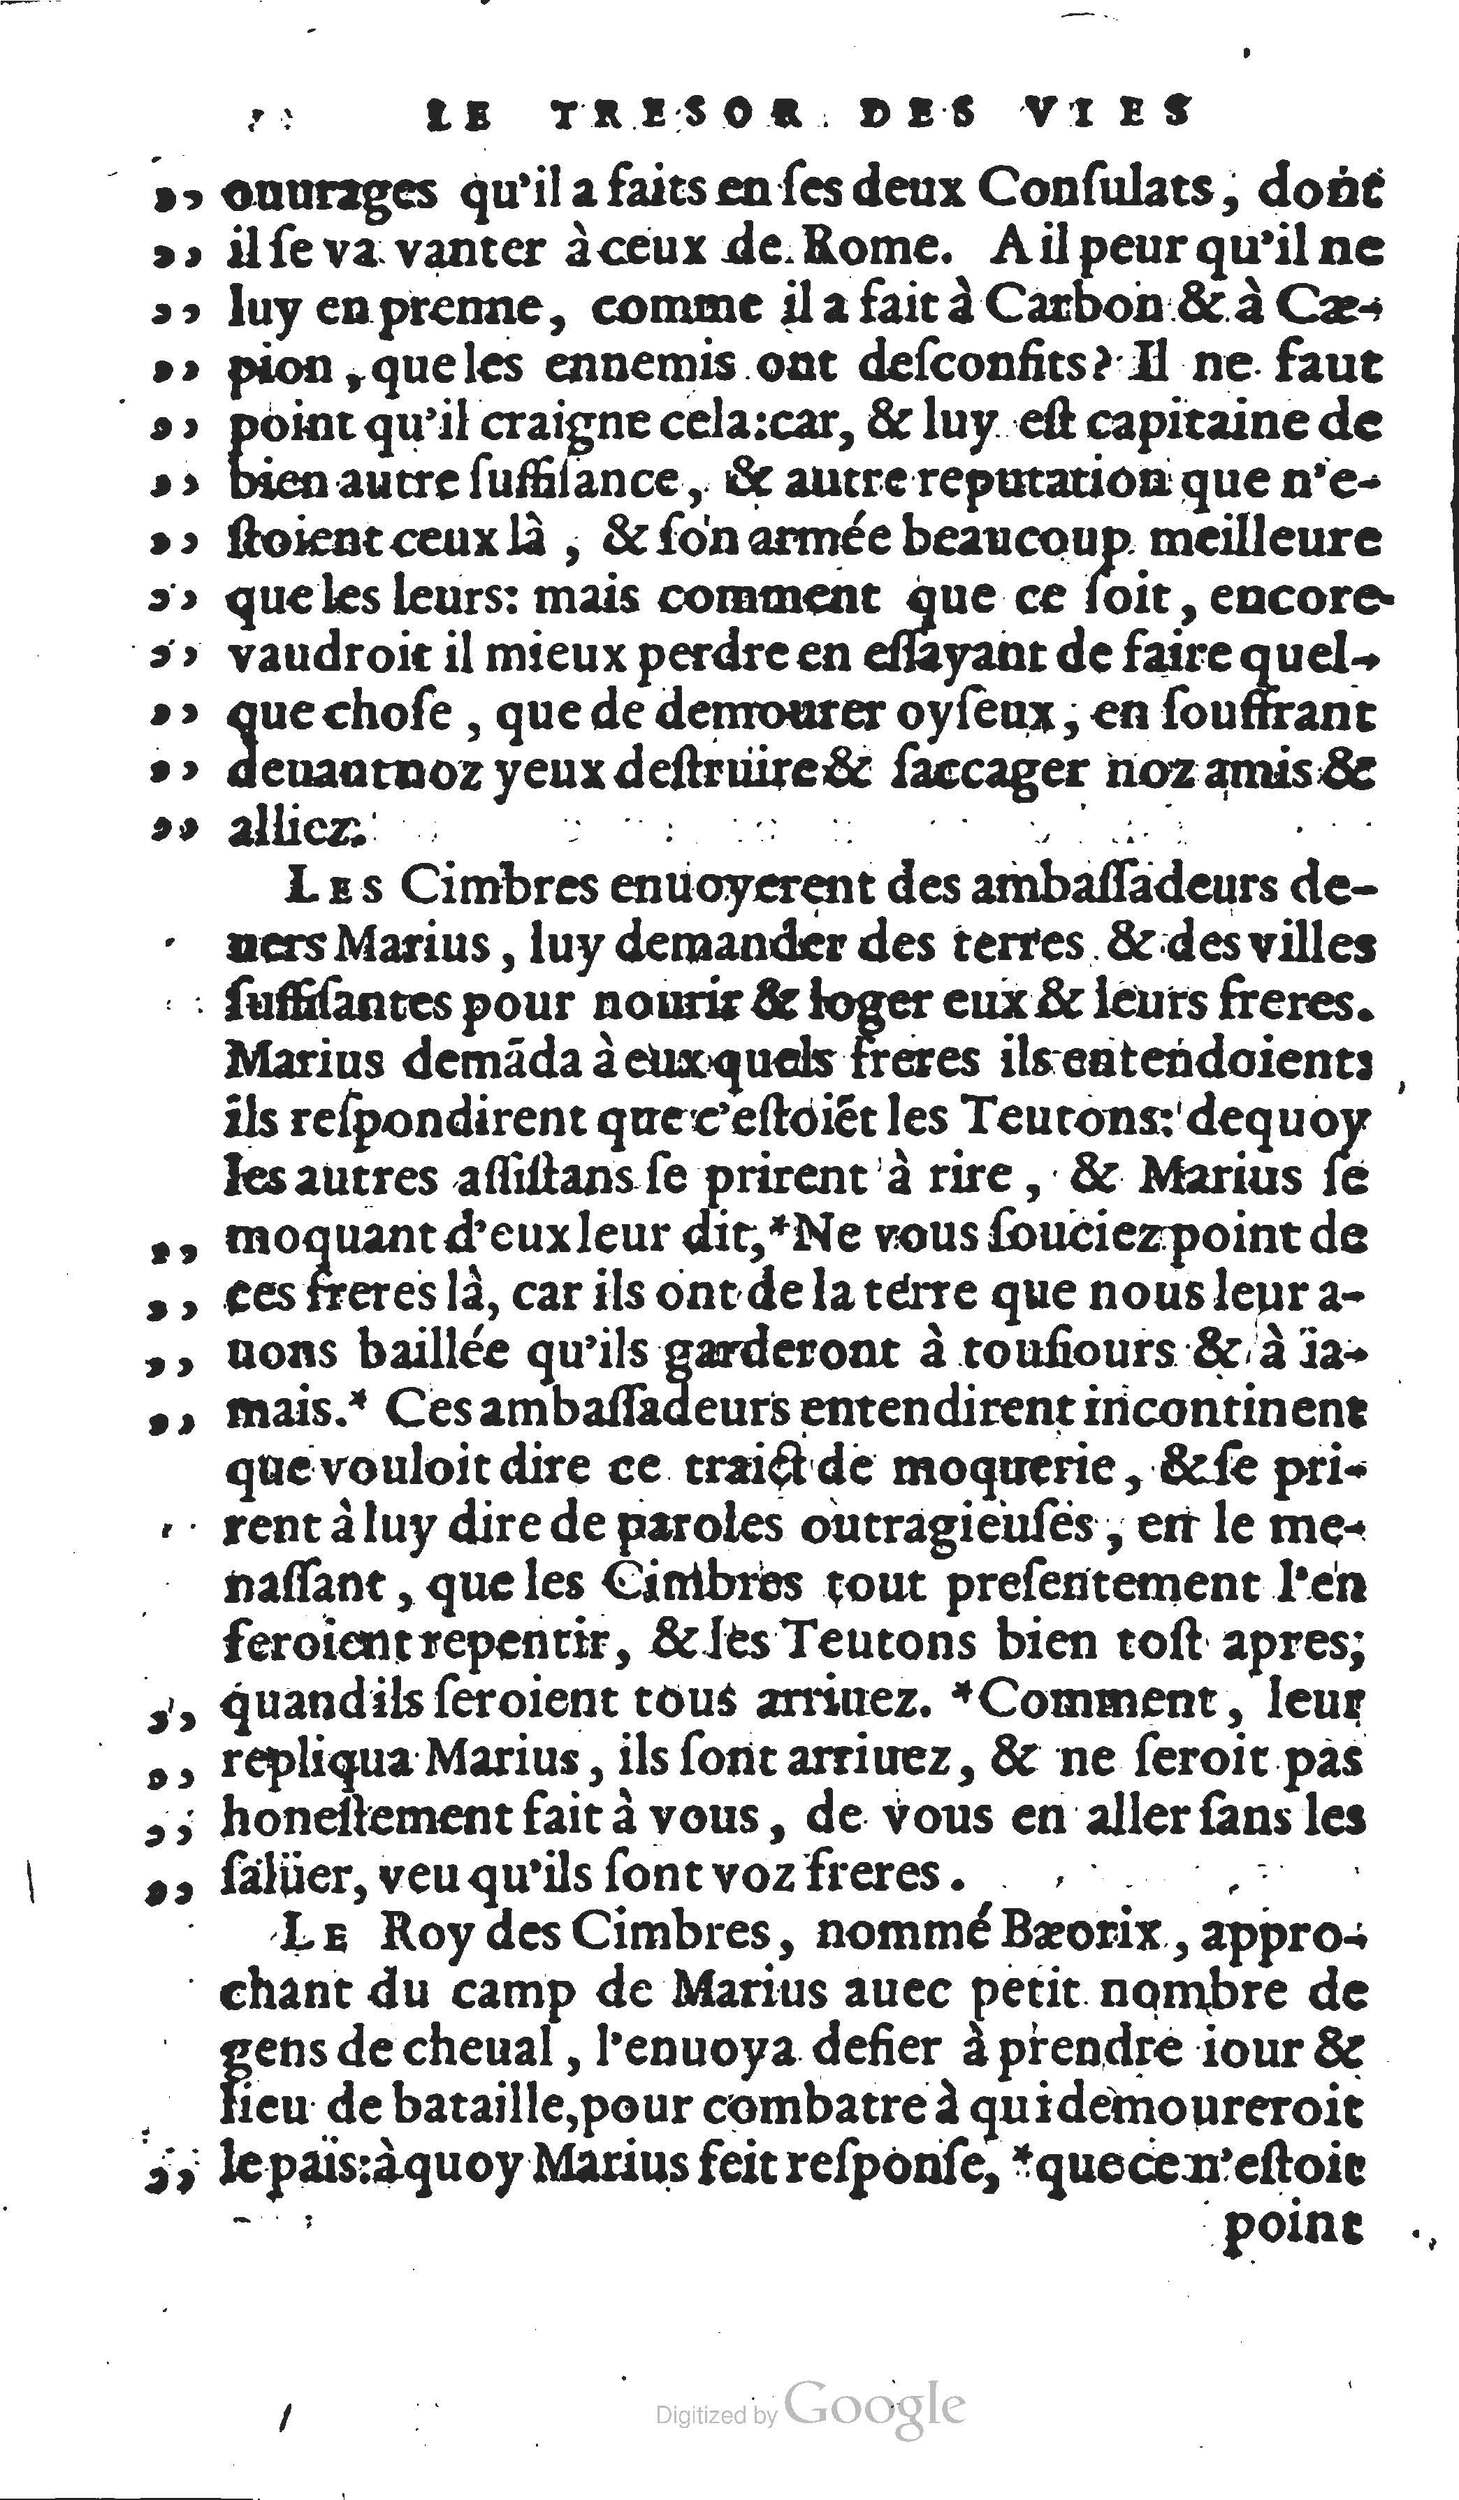 1567 Willem Silvius Trésor des sentences dorées Musée Plantin Moretus_Page_140.jpg